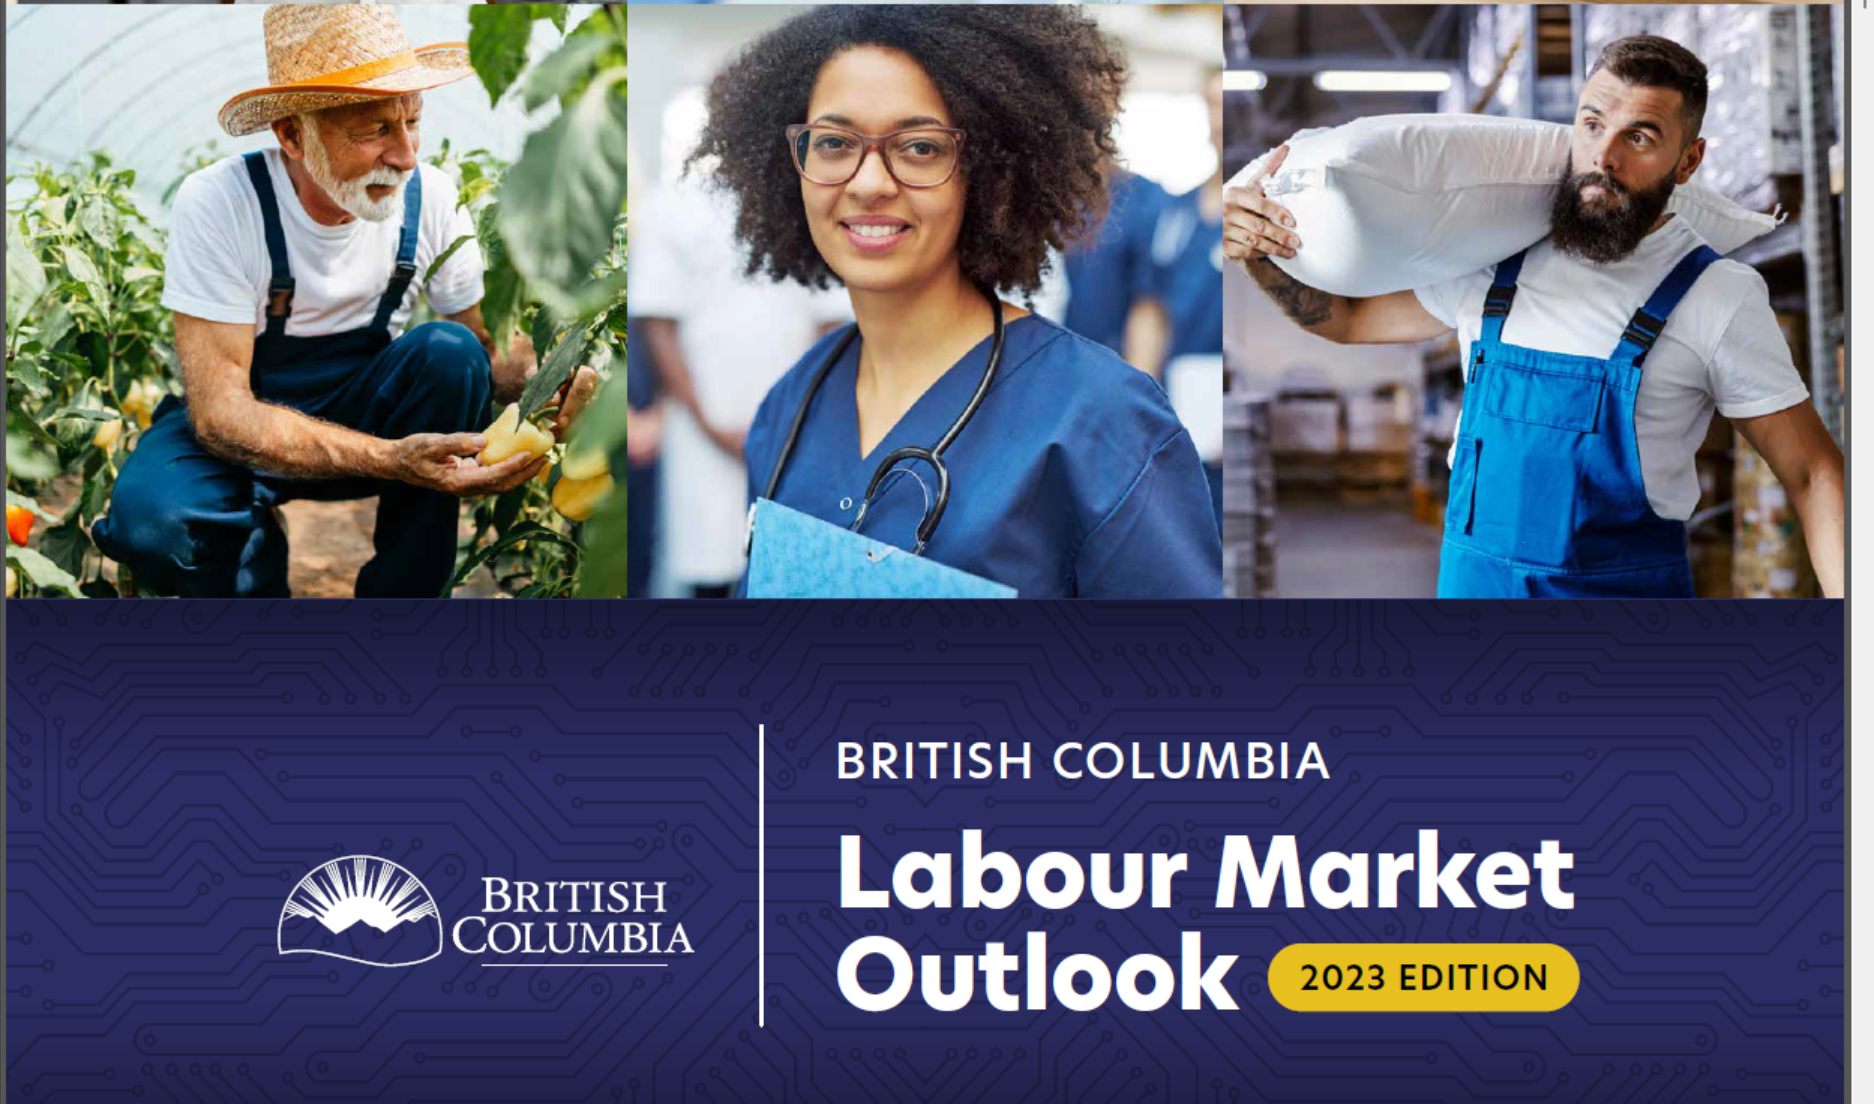 卑诗省府公布的《劳工市场展望》(Labour Market Outlook，2023版)